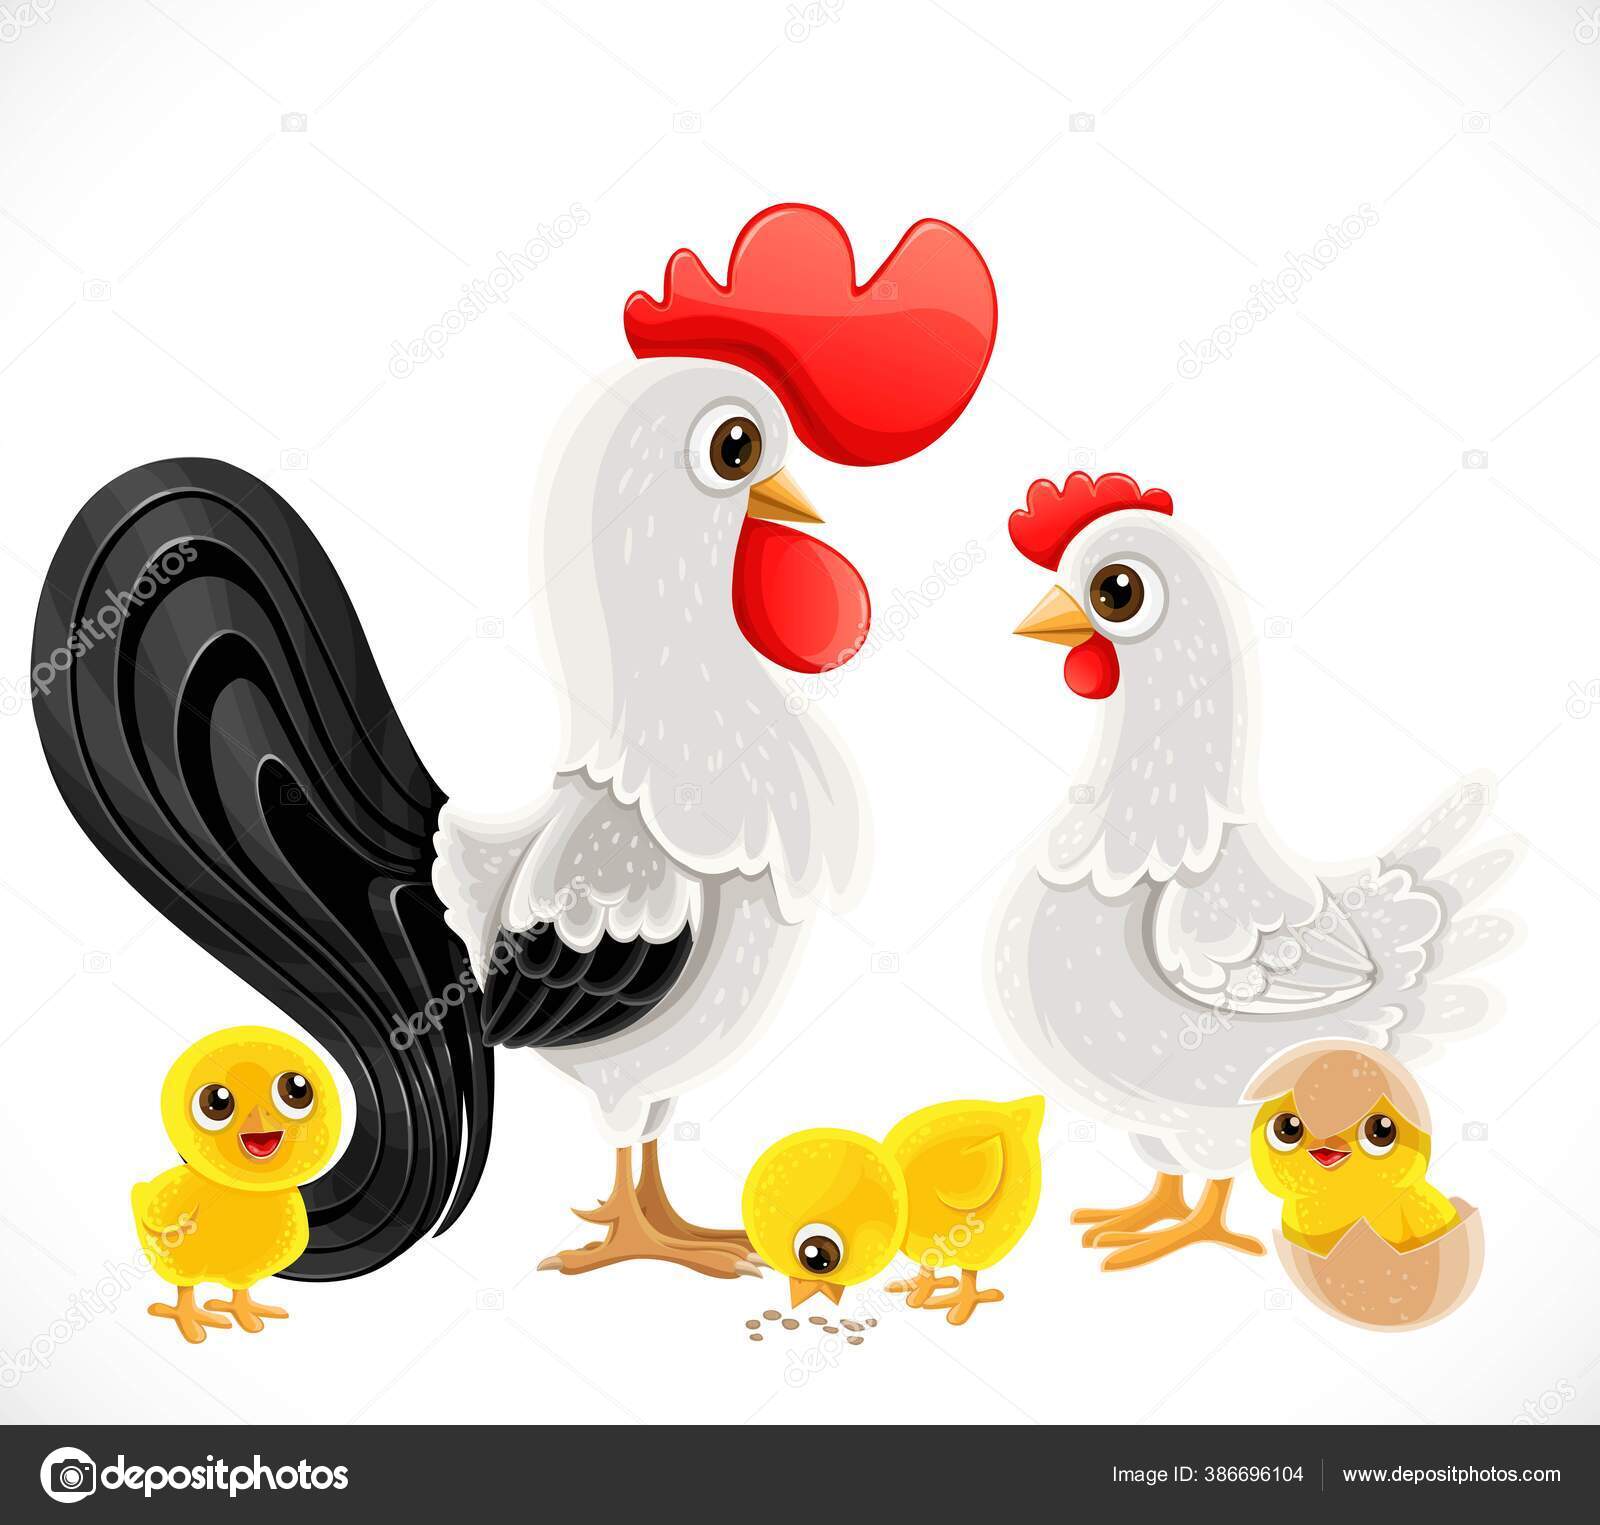 Galinha de desenho animado e família de pássaros de galo em estilo simples,  isolado no fundo branco